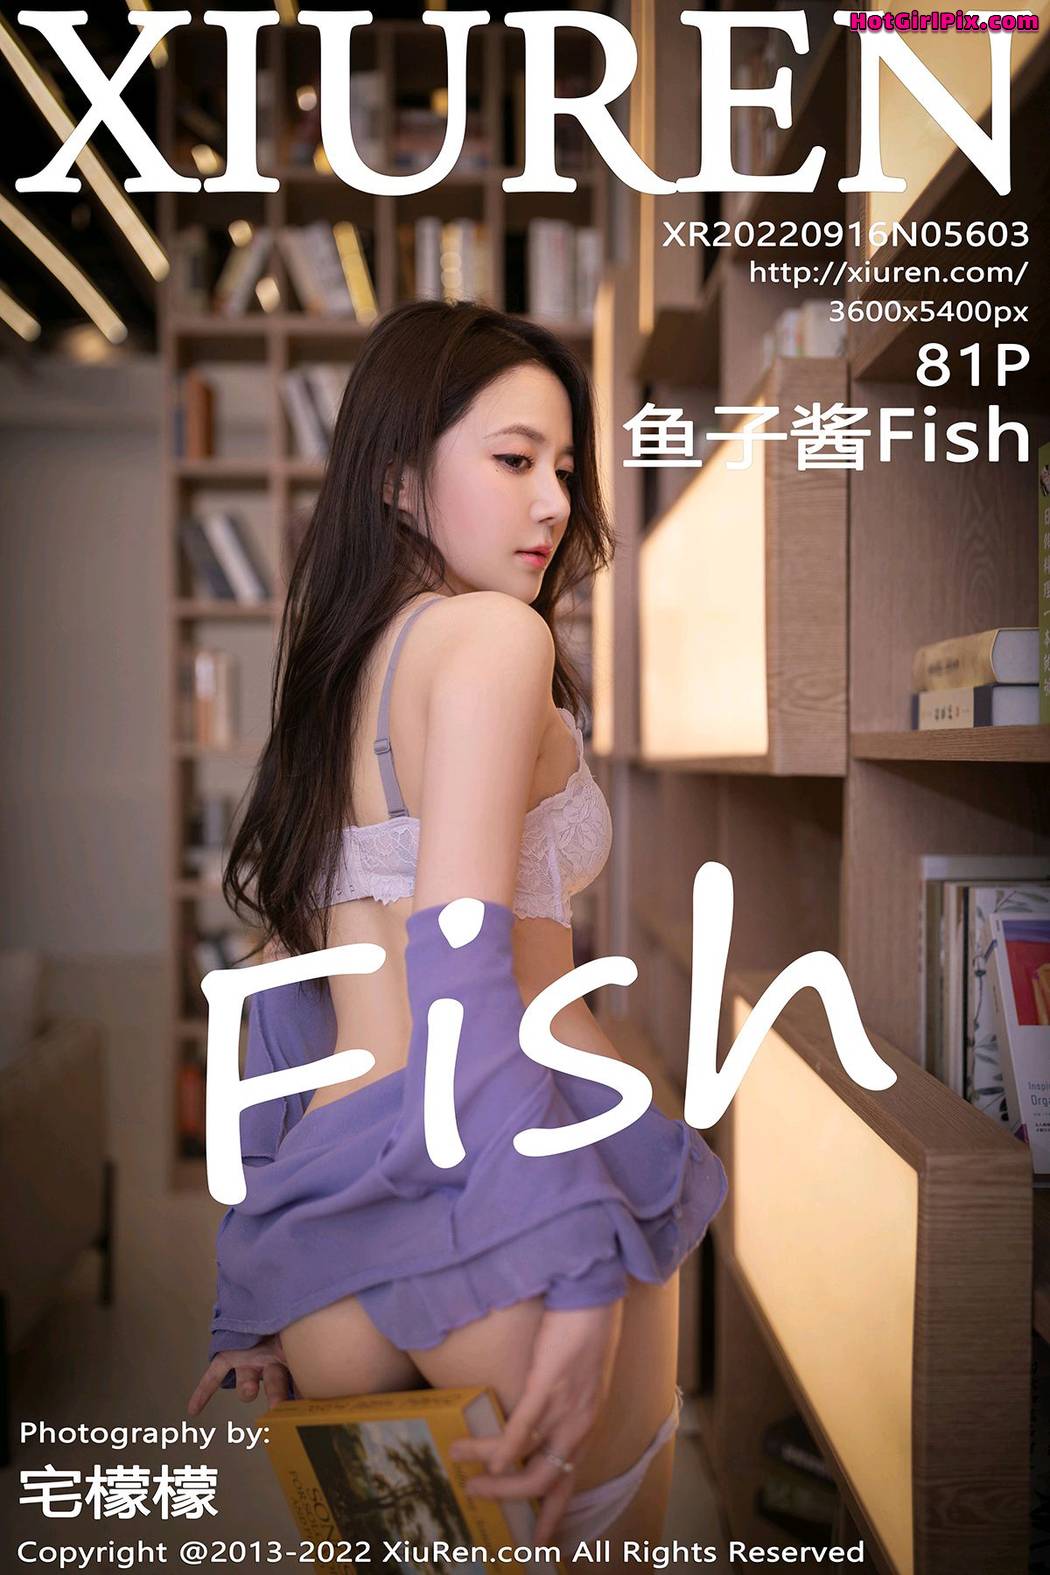 [XIUREN] No.5603 鱼子酱Fish Cover Photo